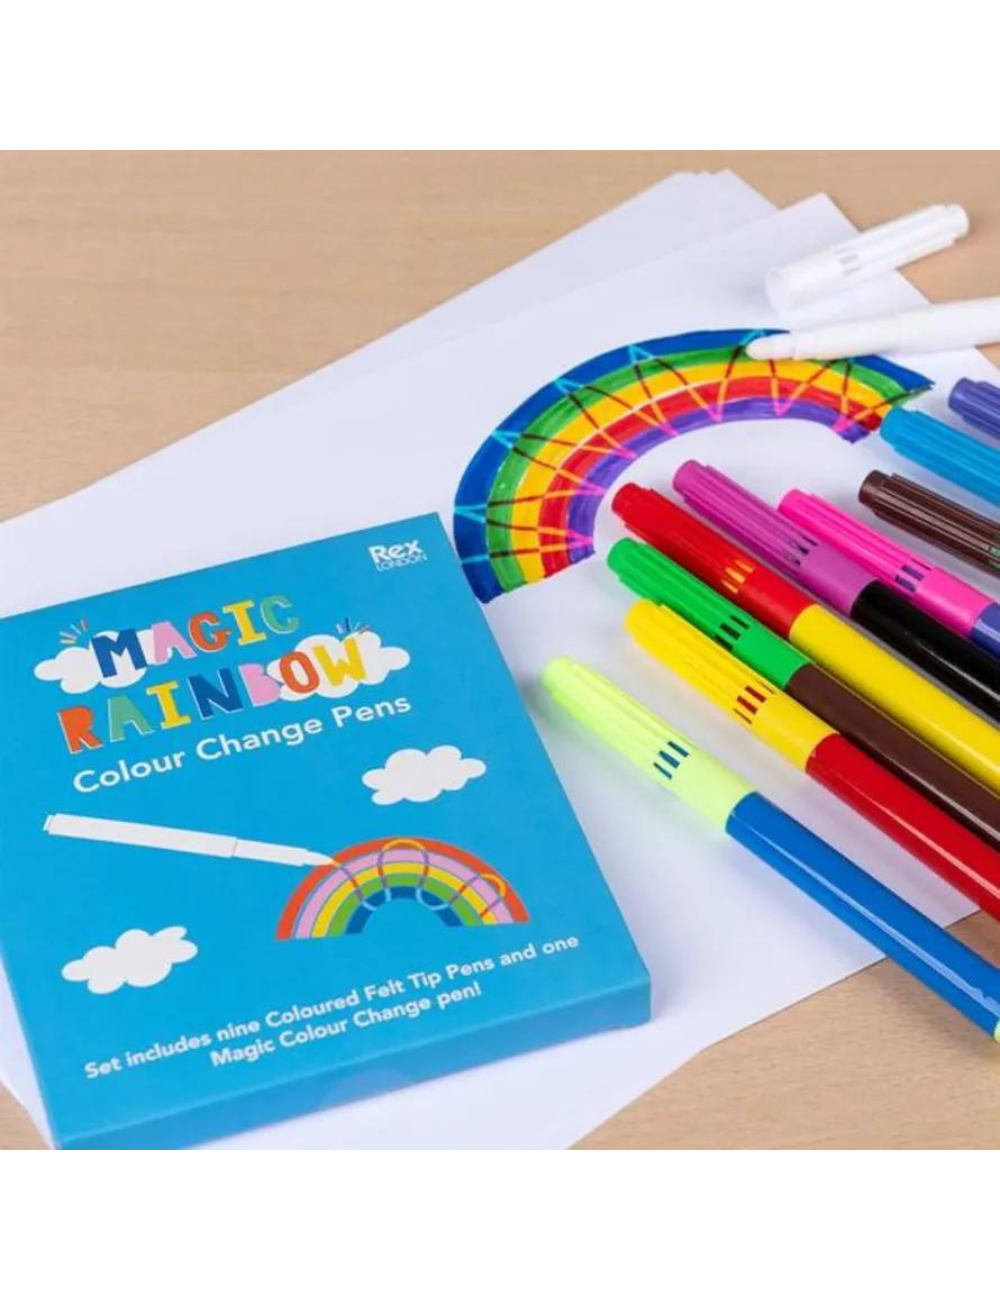 Magic Rainbow Colour Change Pens